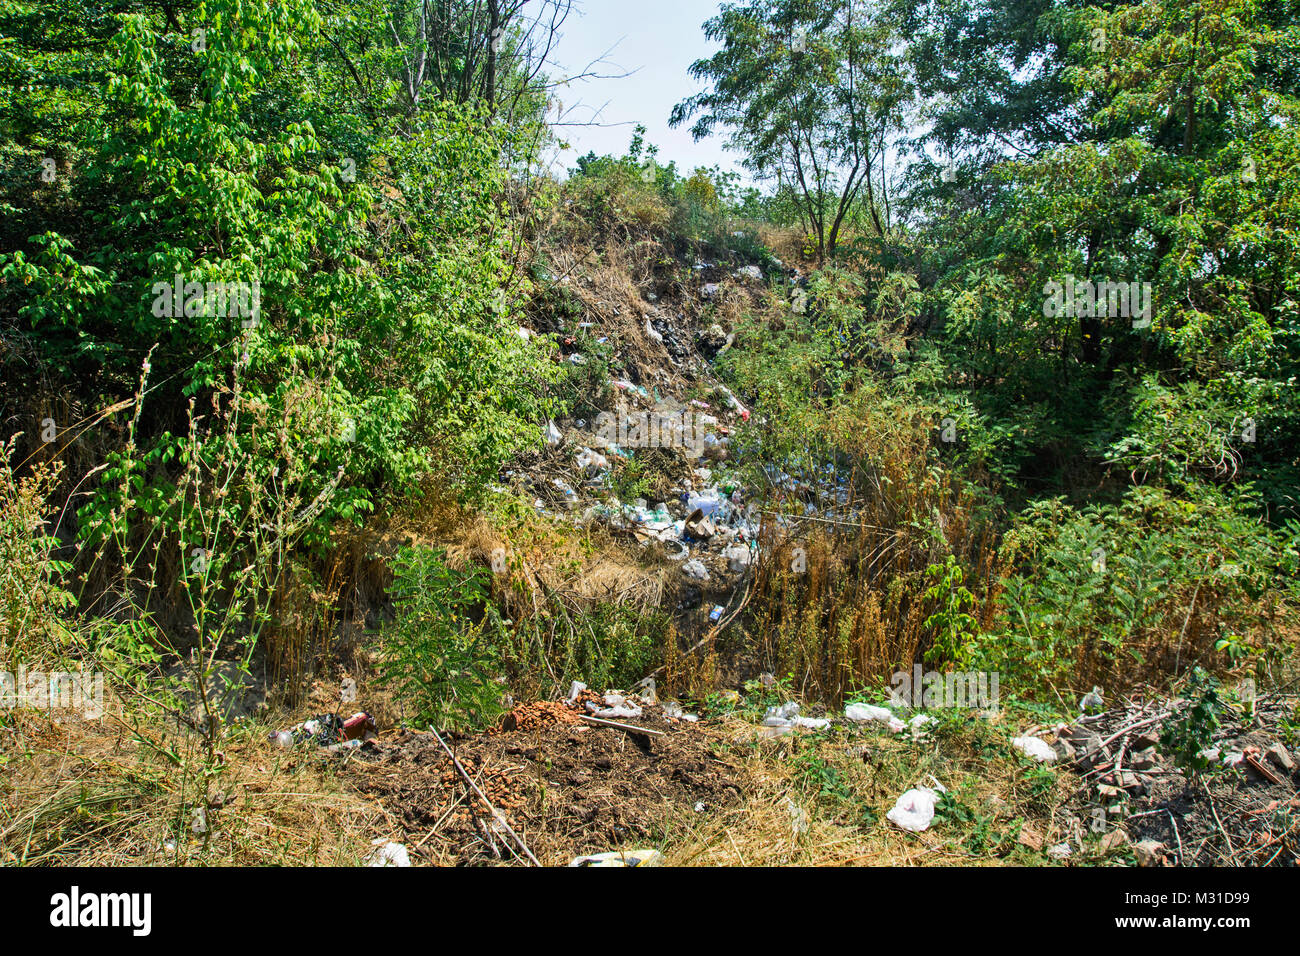 Deponie in der Nähe der Siedlung und in der Natur, ist eine ökologische Bedrohung und Scham. Stockfoto